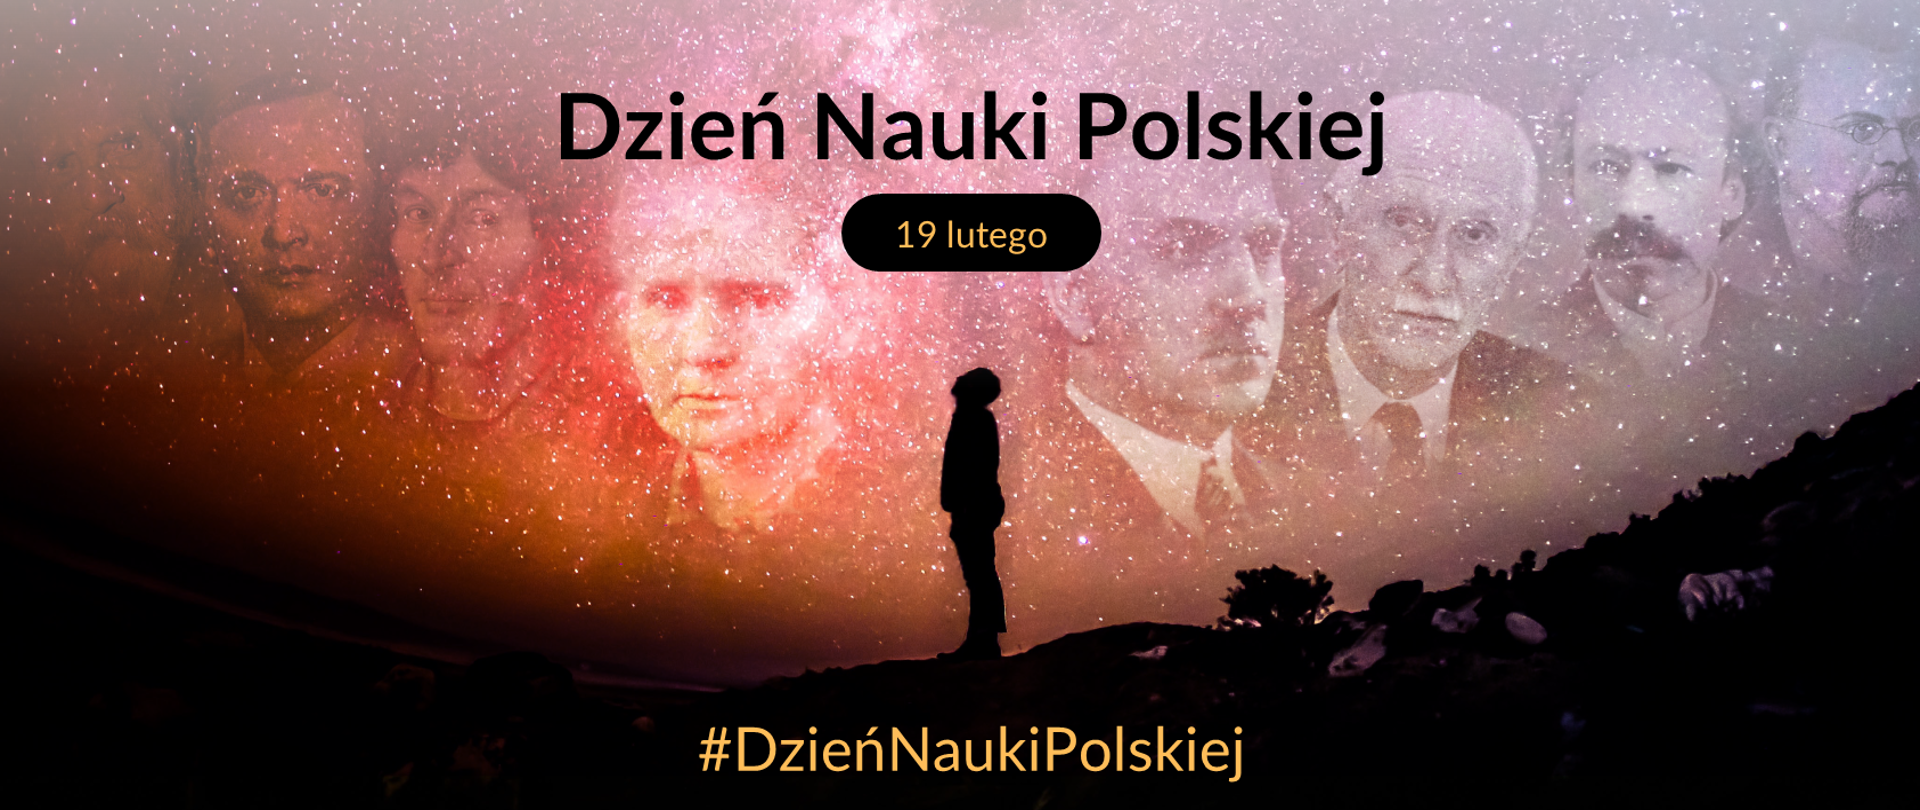 Grafika przedstawiająca kosmos i znanych polskich naukowców oraz tekst: "Dzień Nauki Polskiej – 19 lutego – #DzieńNauki Polskiej"